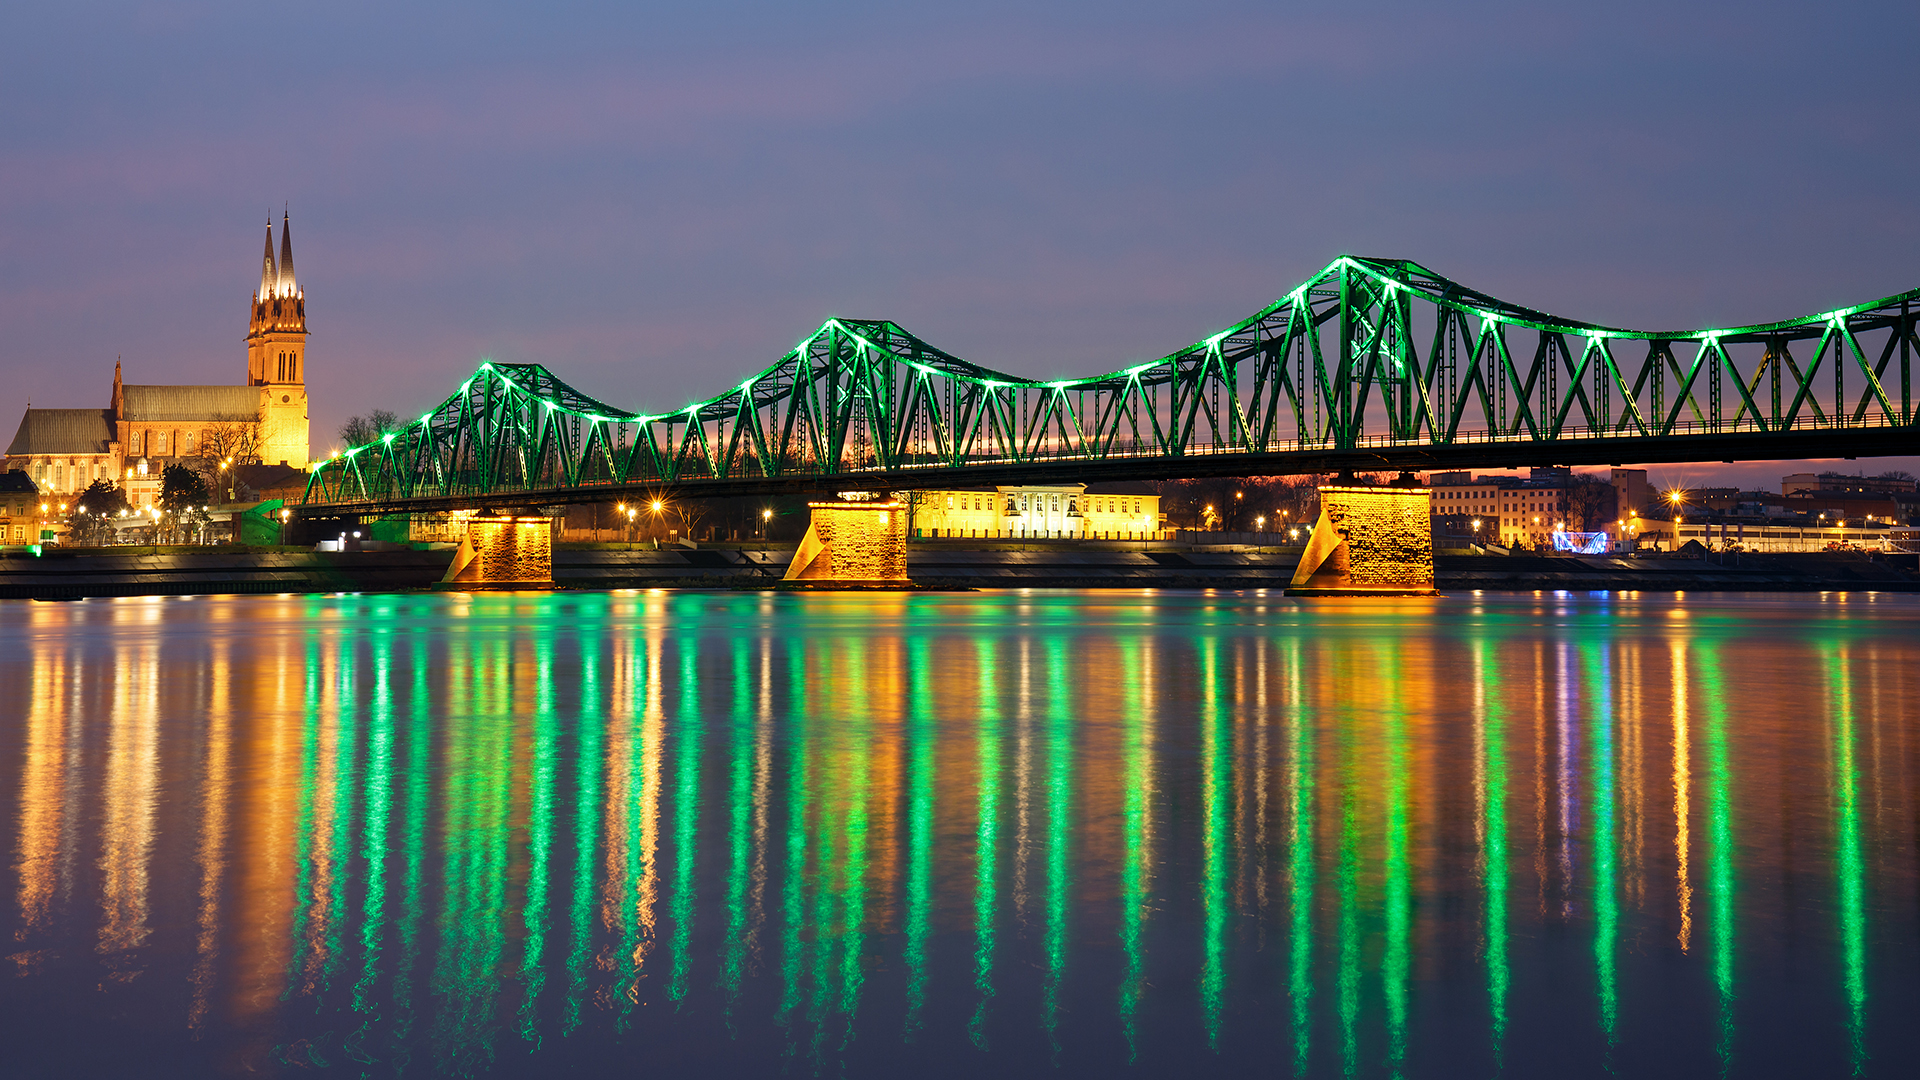 Włocławek kujawsko-pomorske most